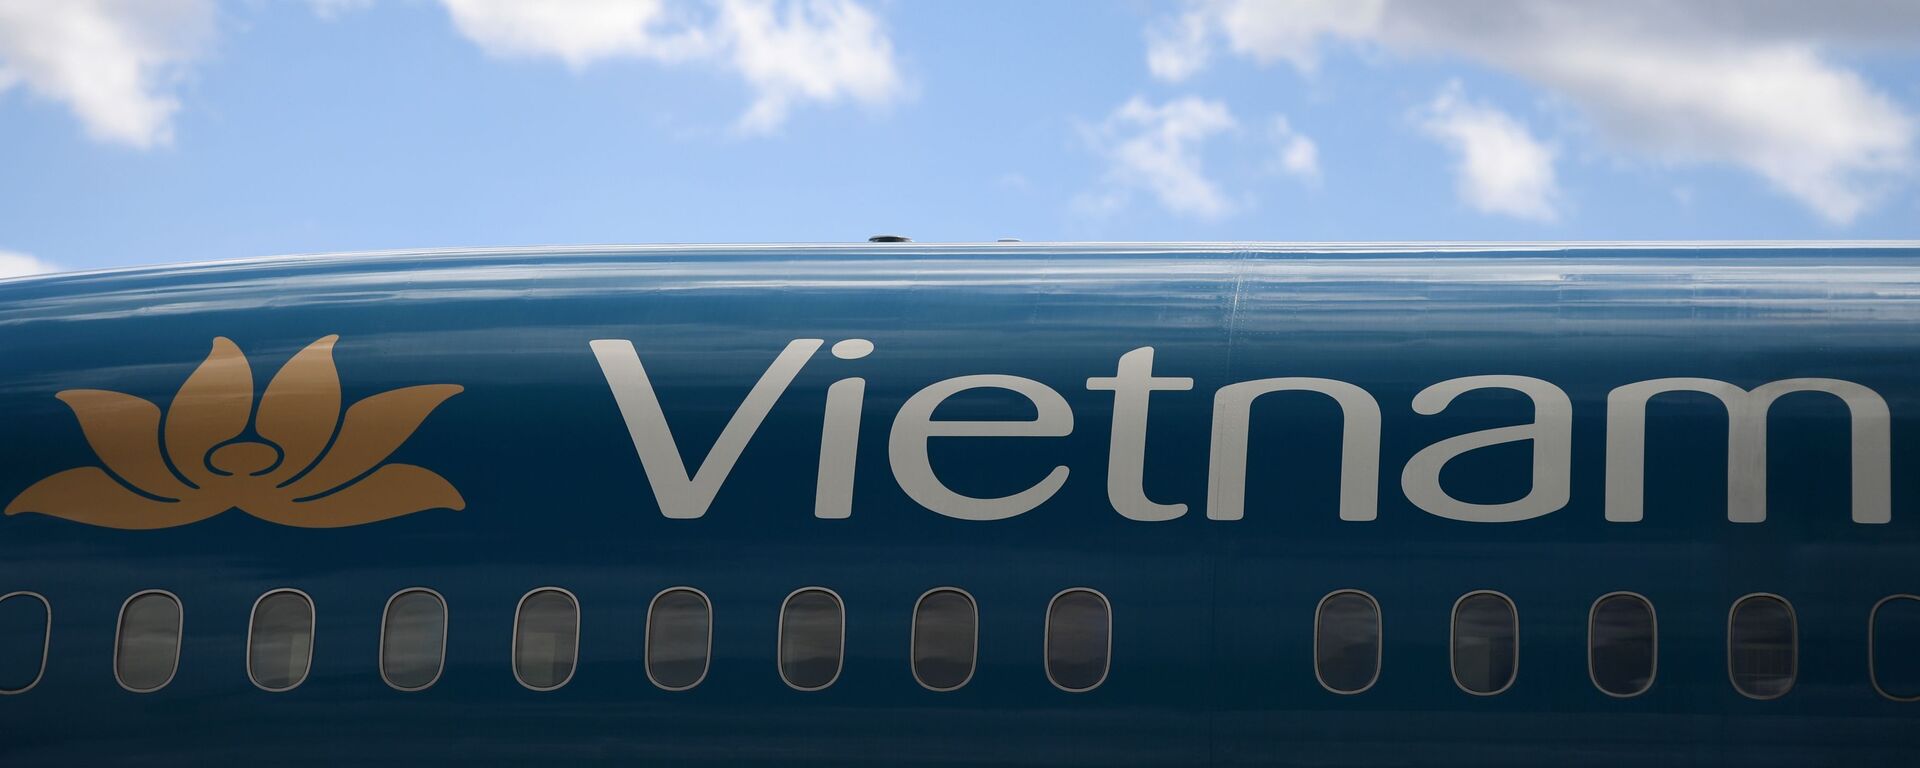 Máy bay của hãng Vietnam Airlines tại sân bay quốc tế “Sheremetyevo” - Sputnik Việt Nam, 1920, 10.05.2021